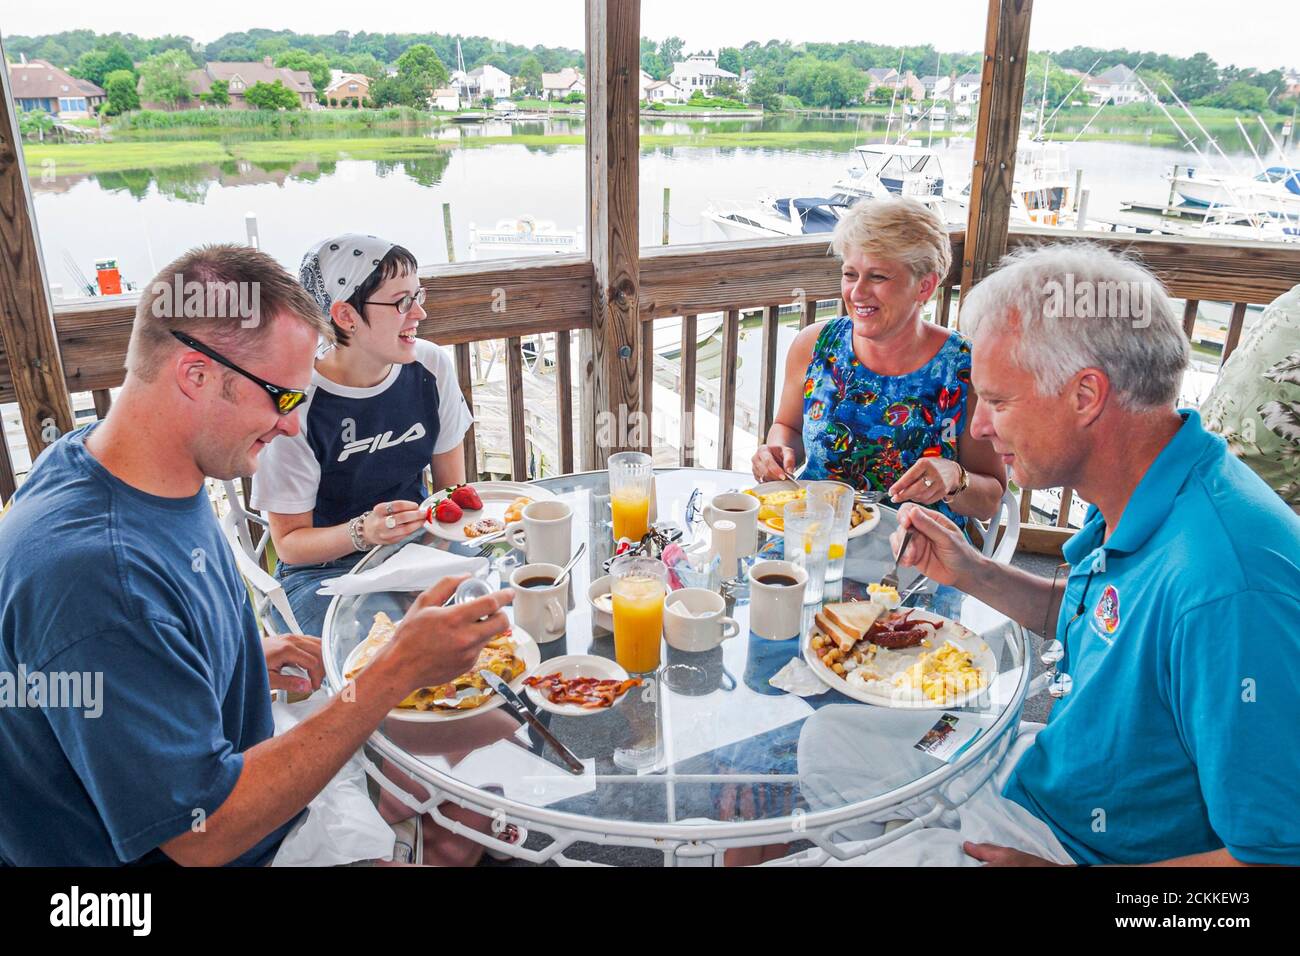 Hampton Virginia, Tidewater Gegend, Hampton River Marina Boote Bootfahren, Hafen Yachten Restaurant Essen Essen gehen Familie Paare Tisch Essen im Freien Stockfoto